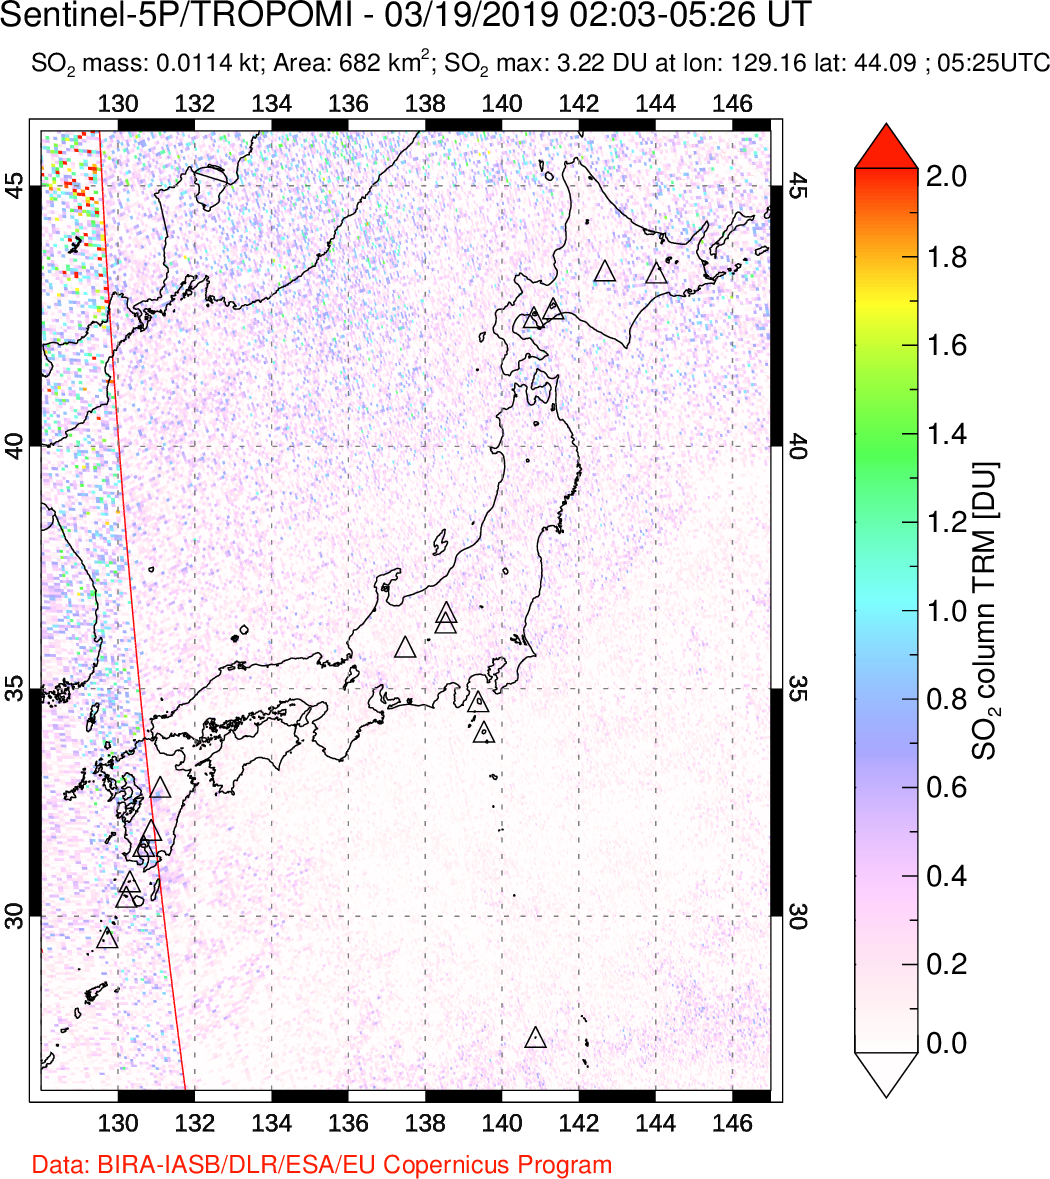 A sulfur dioxide image over Japan on Mar 19, 2019.